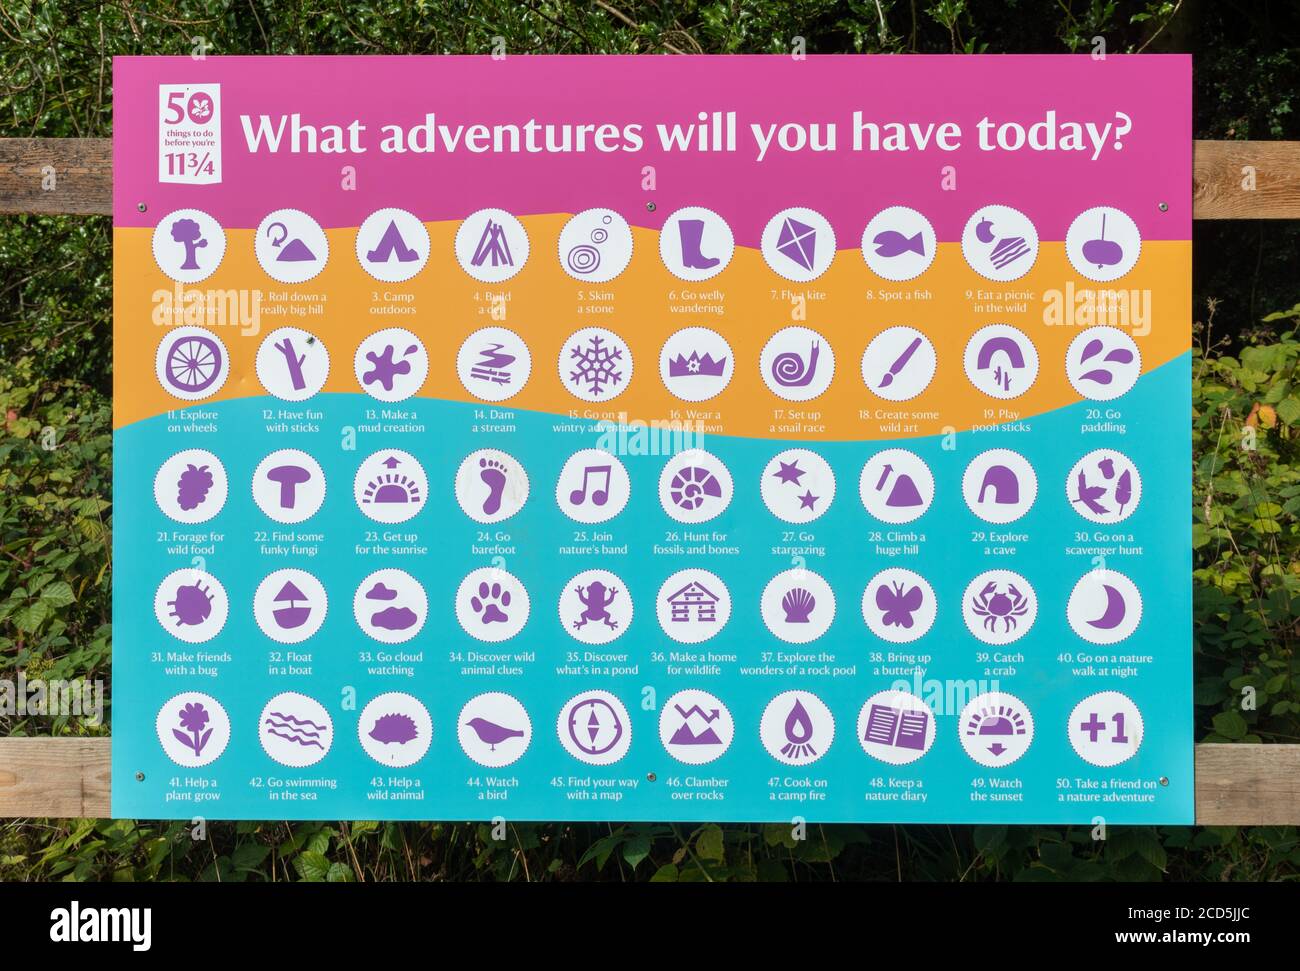 National Trust Poster oder beachten Sie über 50 Dinge zu tun, bevor Sie 11 und 3/4 - Vorschläge für Outdoor-Kinder Abenteuer und Aktivitäten, Großbritannien Stockfoto